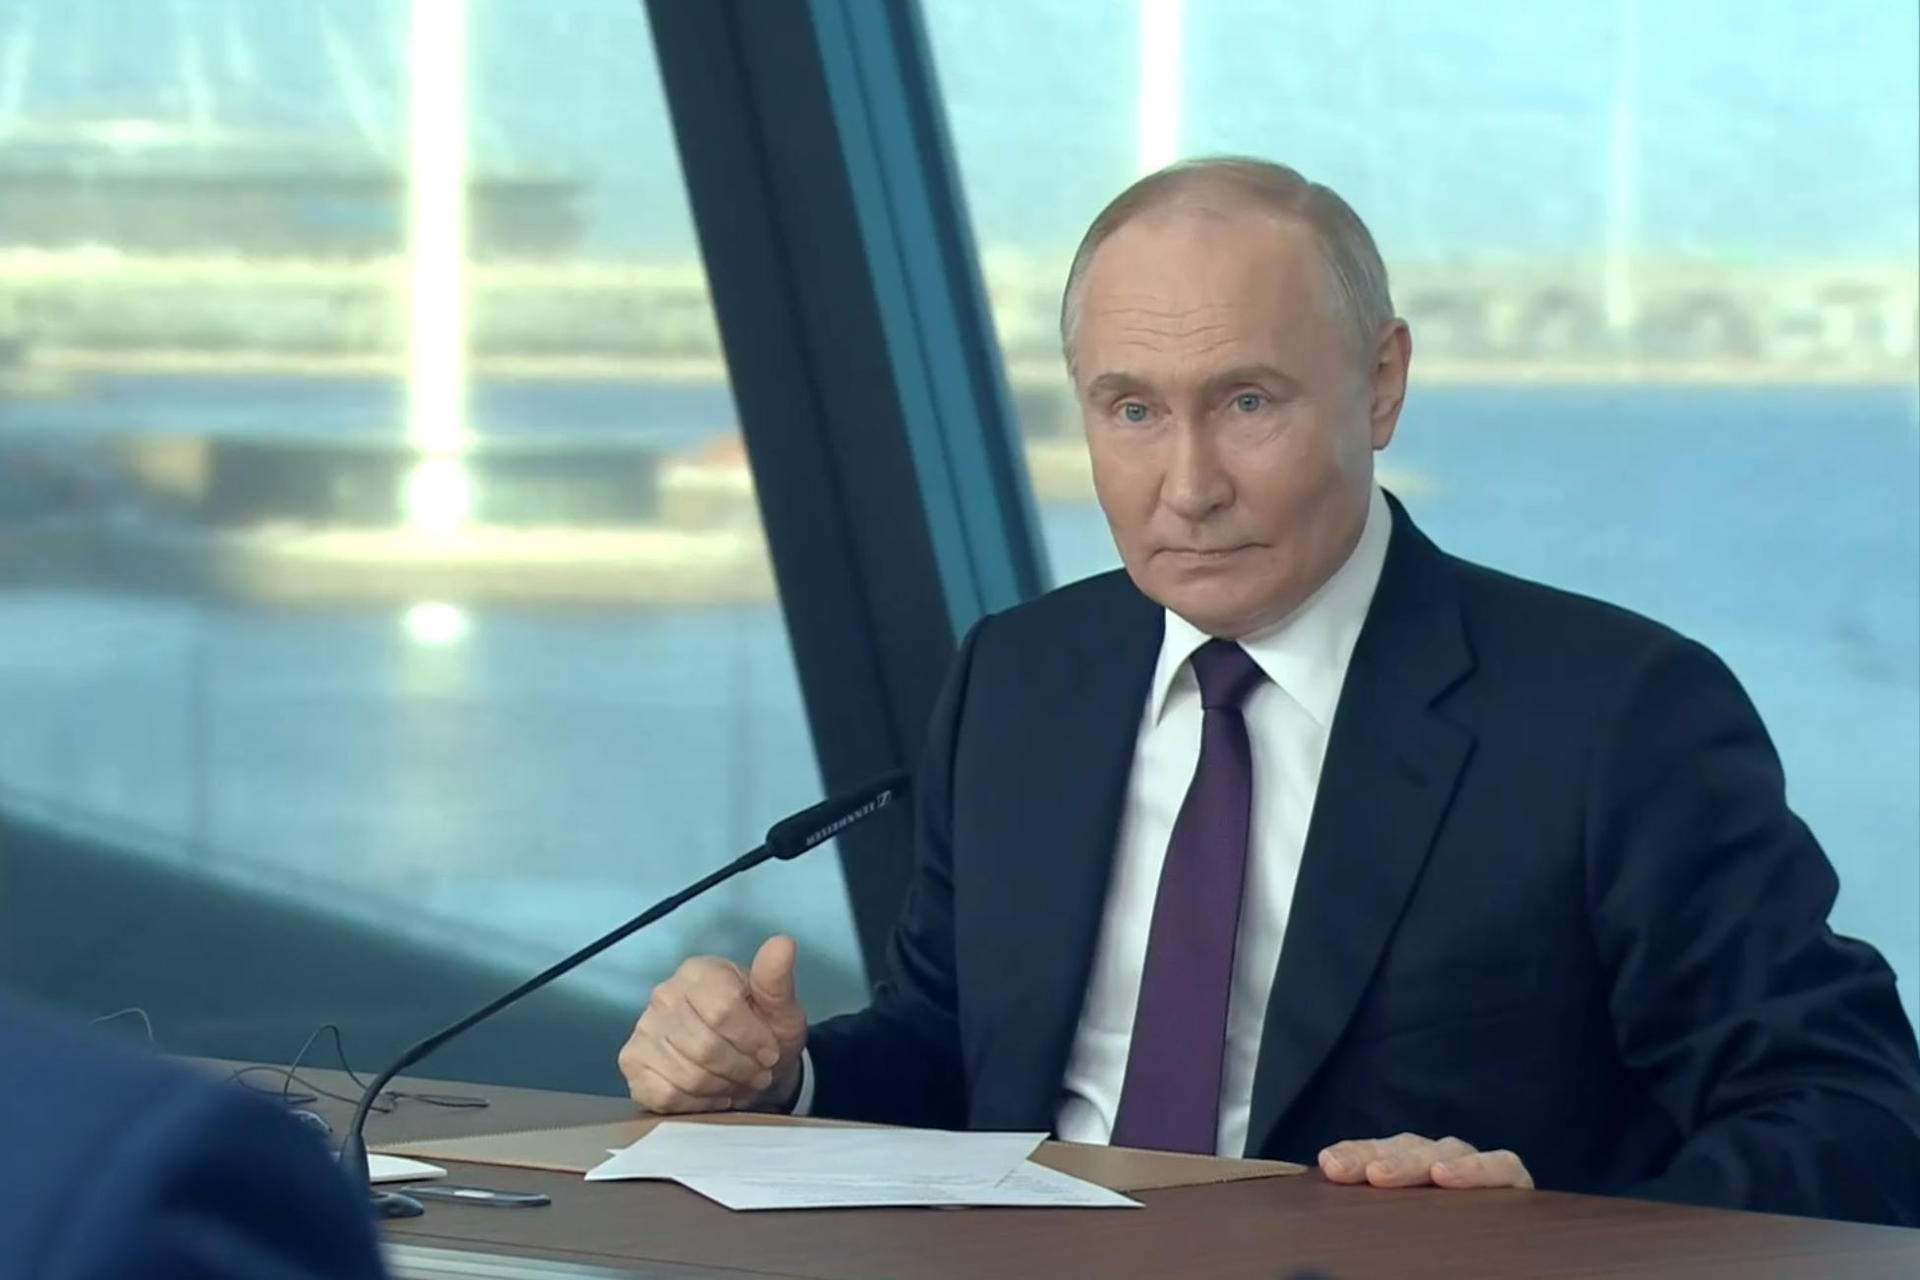 Vladímir Putin surt en defensa de Donald Trump: “És evident la persecució judicial”